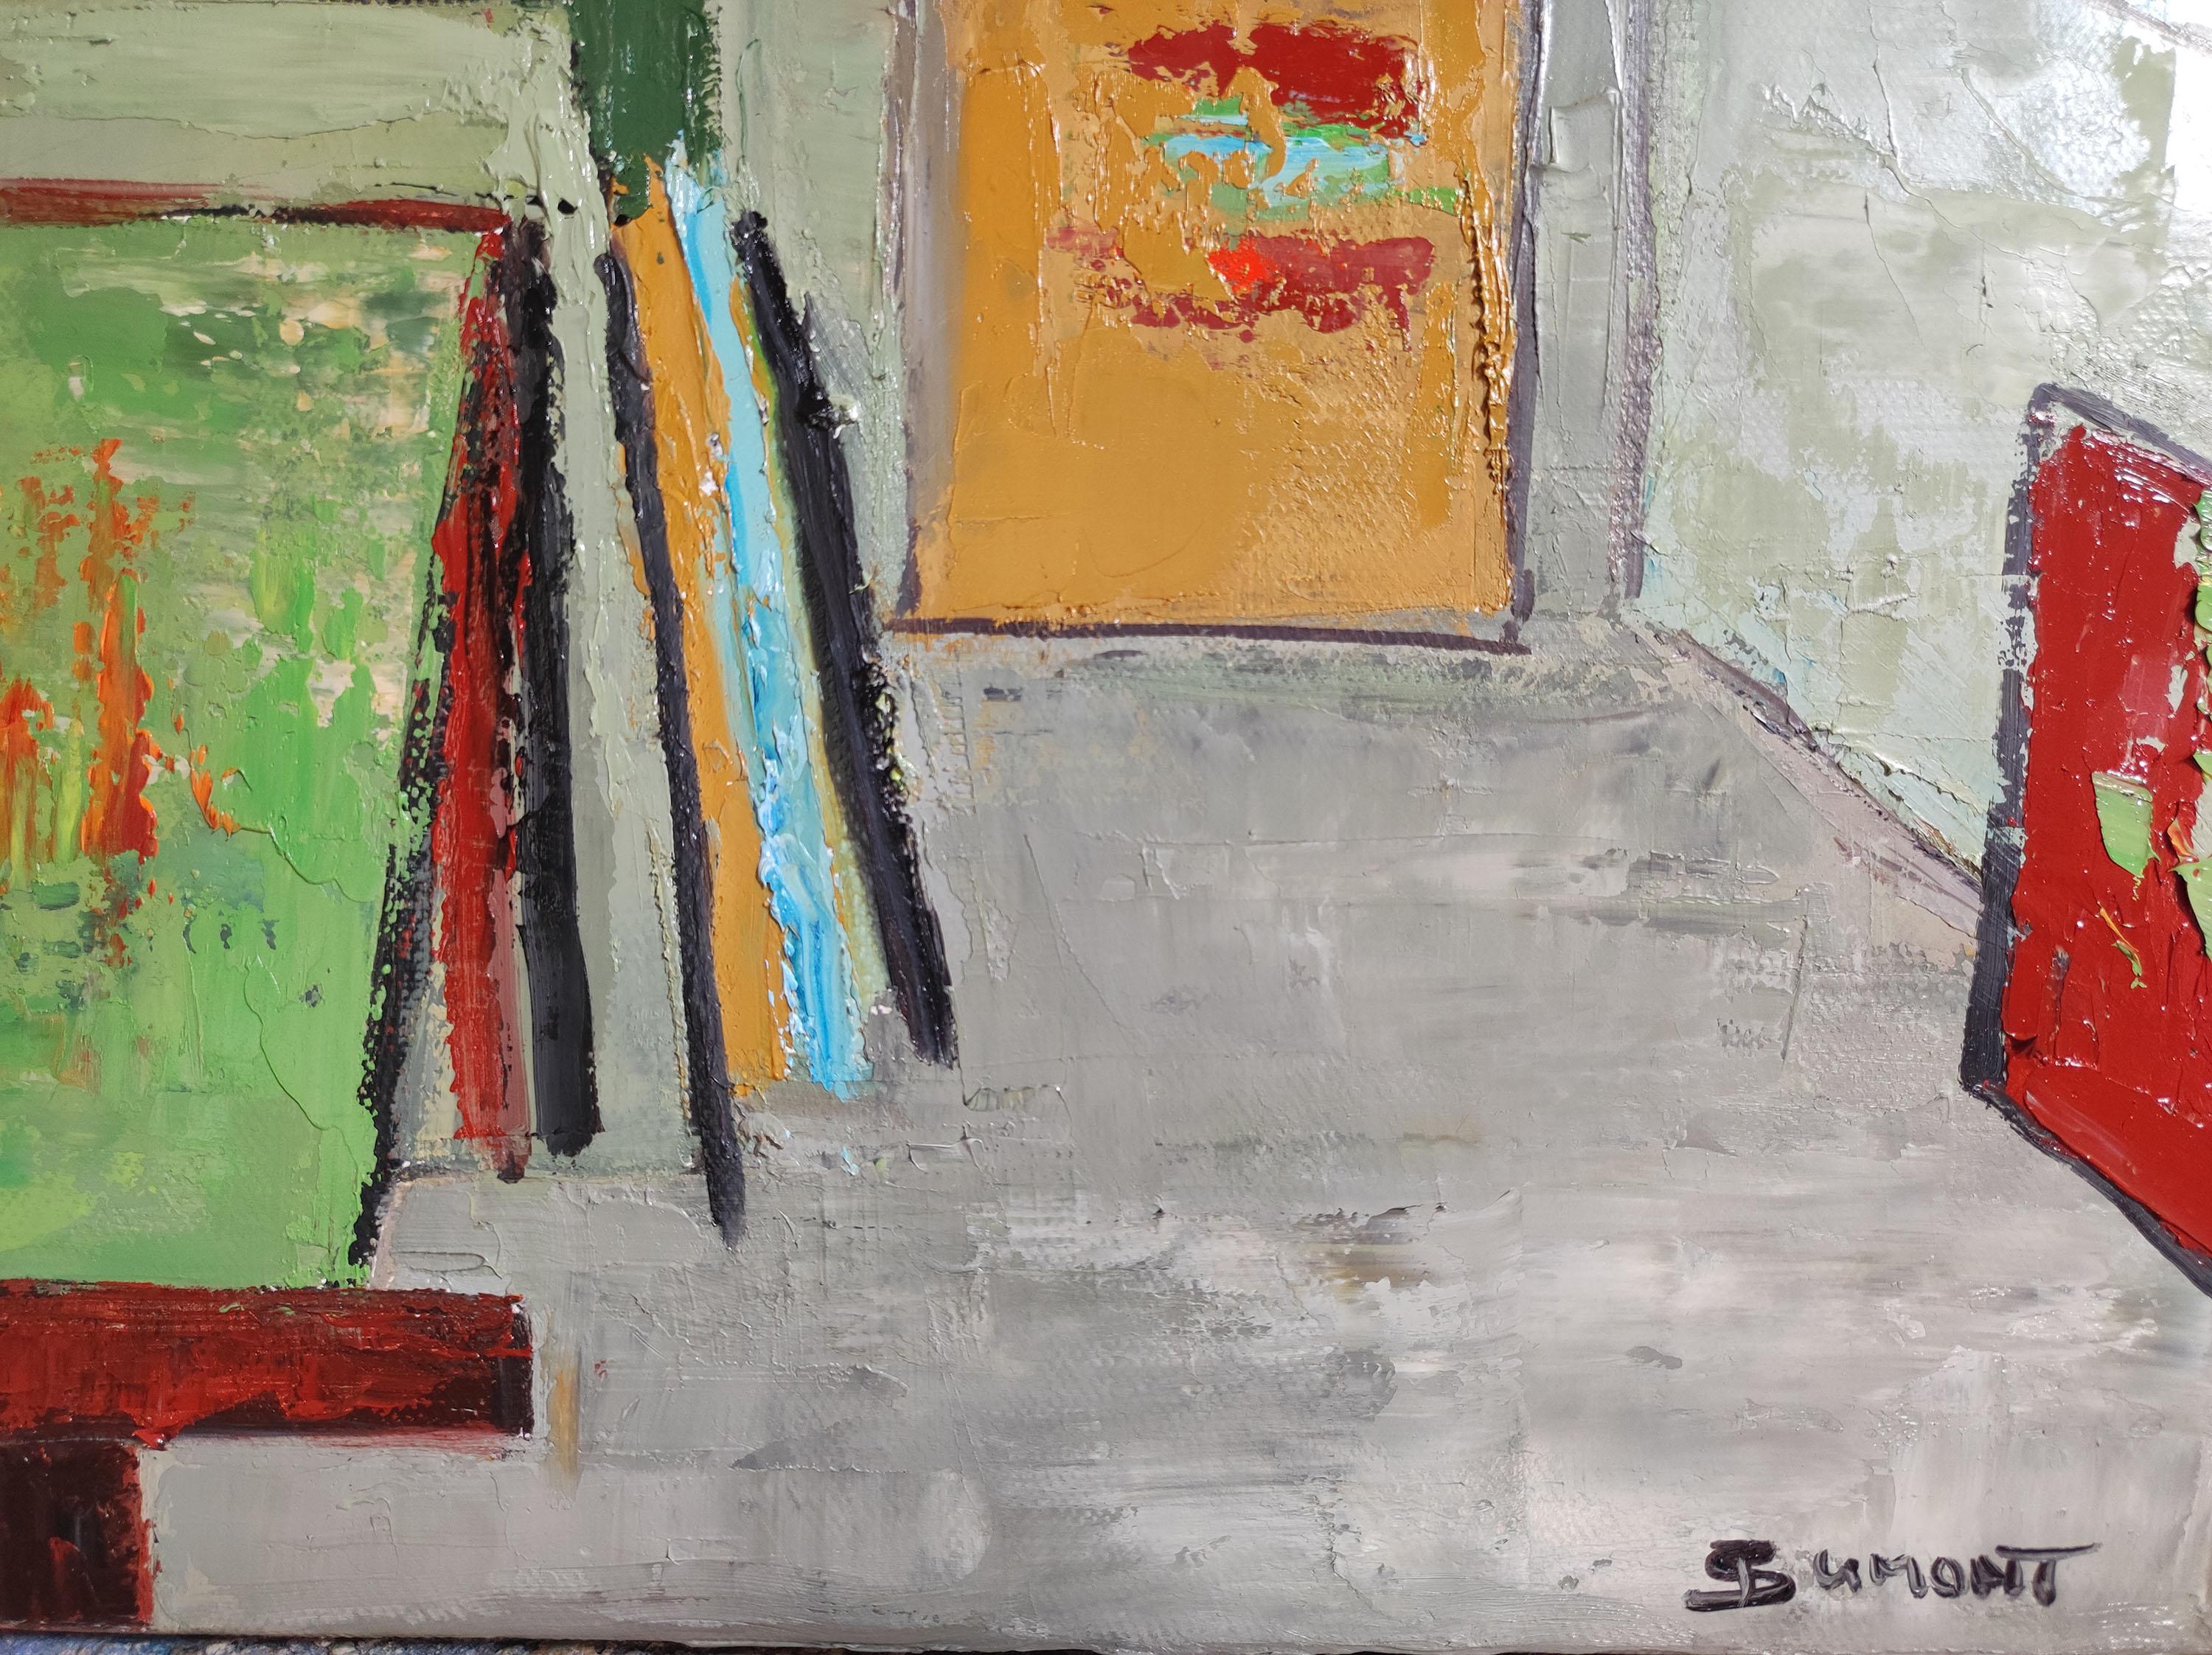 Studio 19,  grün abstrakt, öl auf leinwand, zeitgenössisch, expressionismus, französisch (Geometrische Abstraktion), Painting, von SOPHIE DUMONT